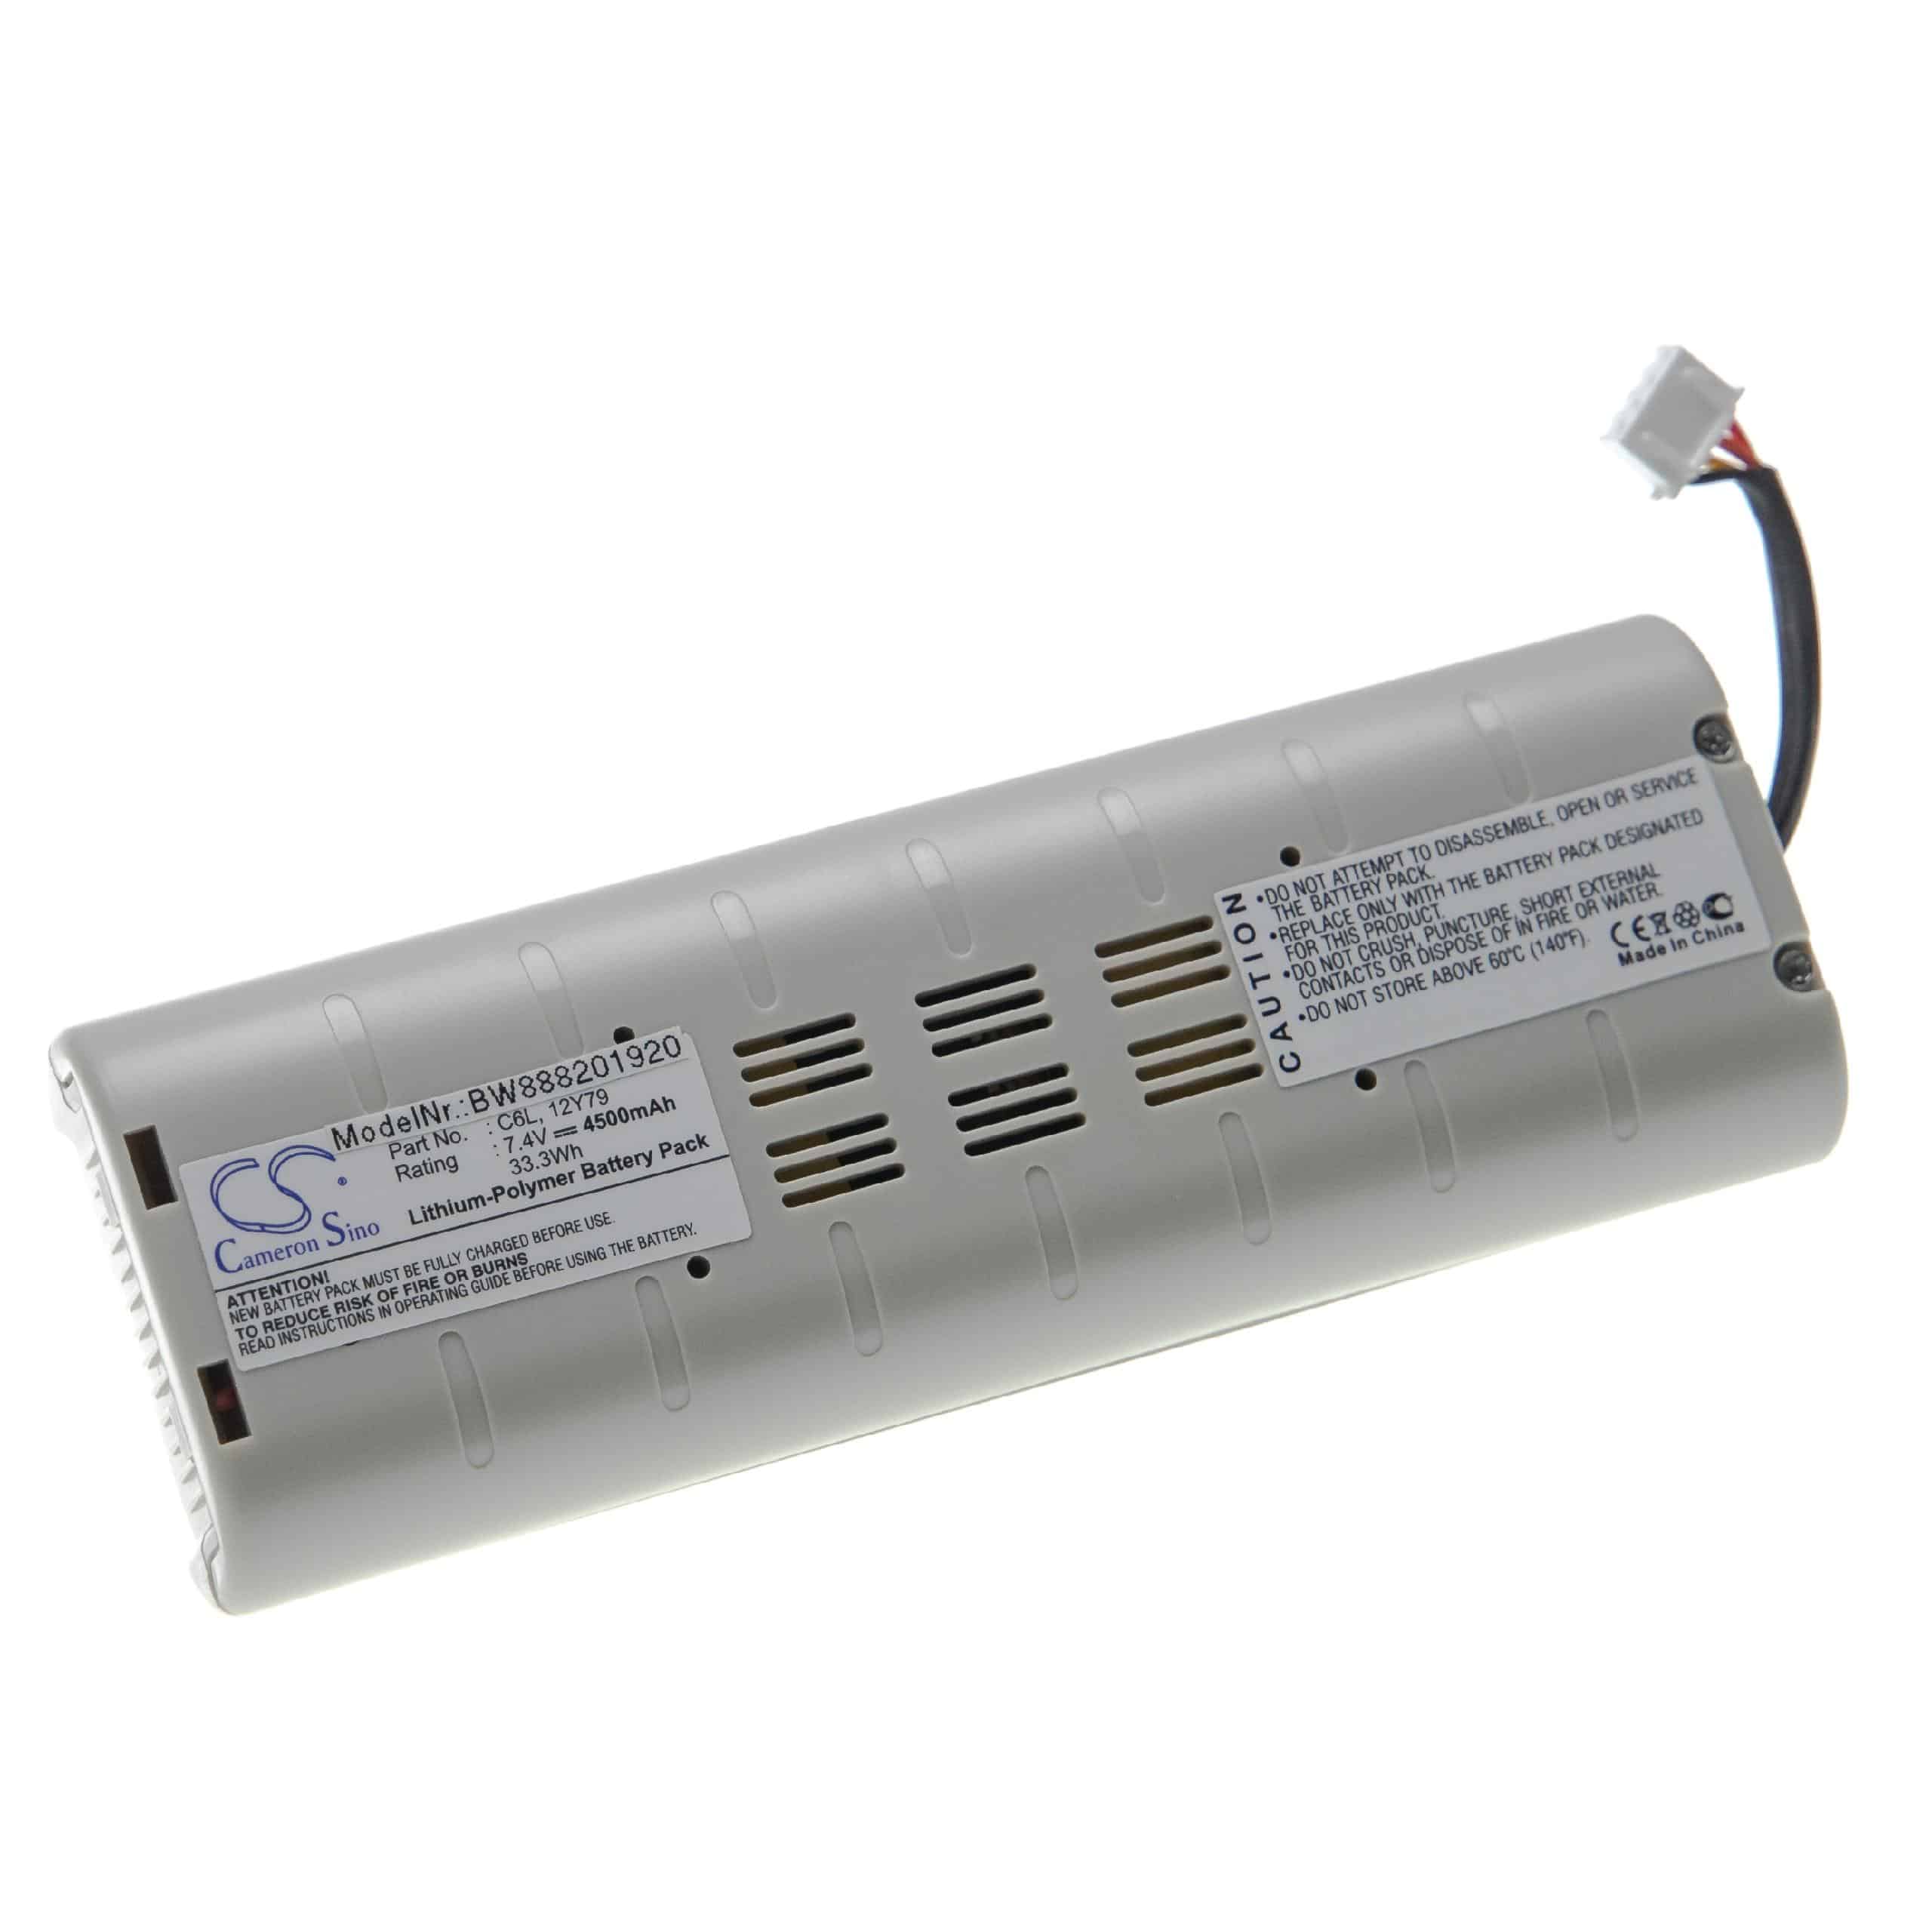 Batterie remplace Pure C6L, 12V79, VL-60923 pour radio - 4500mAh 7,4V Li-polymère